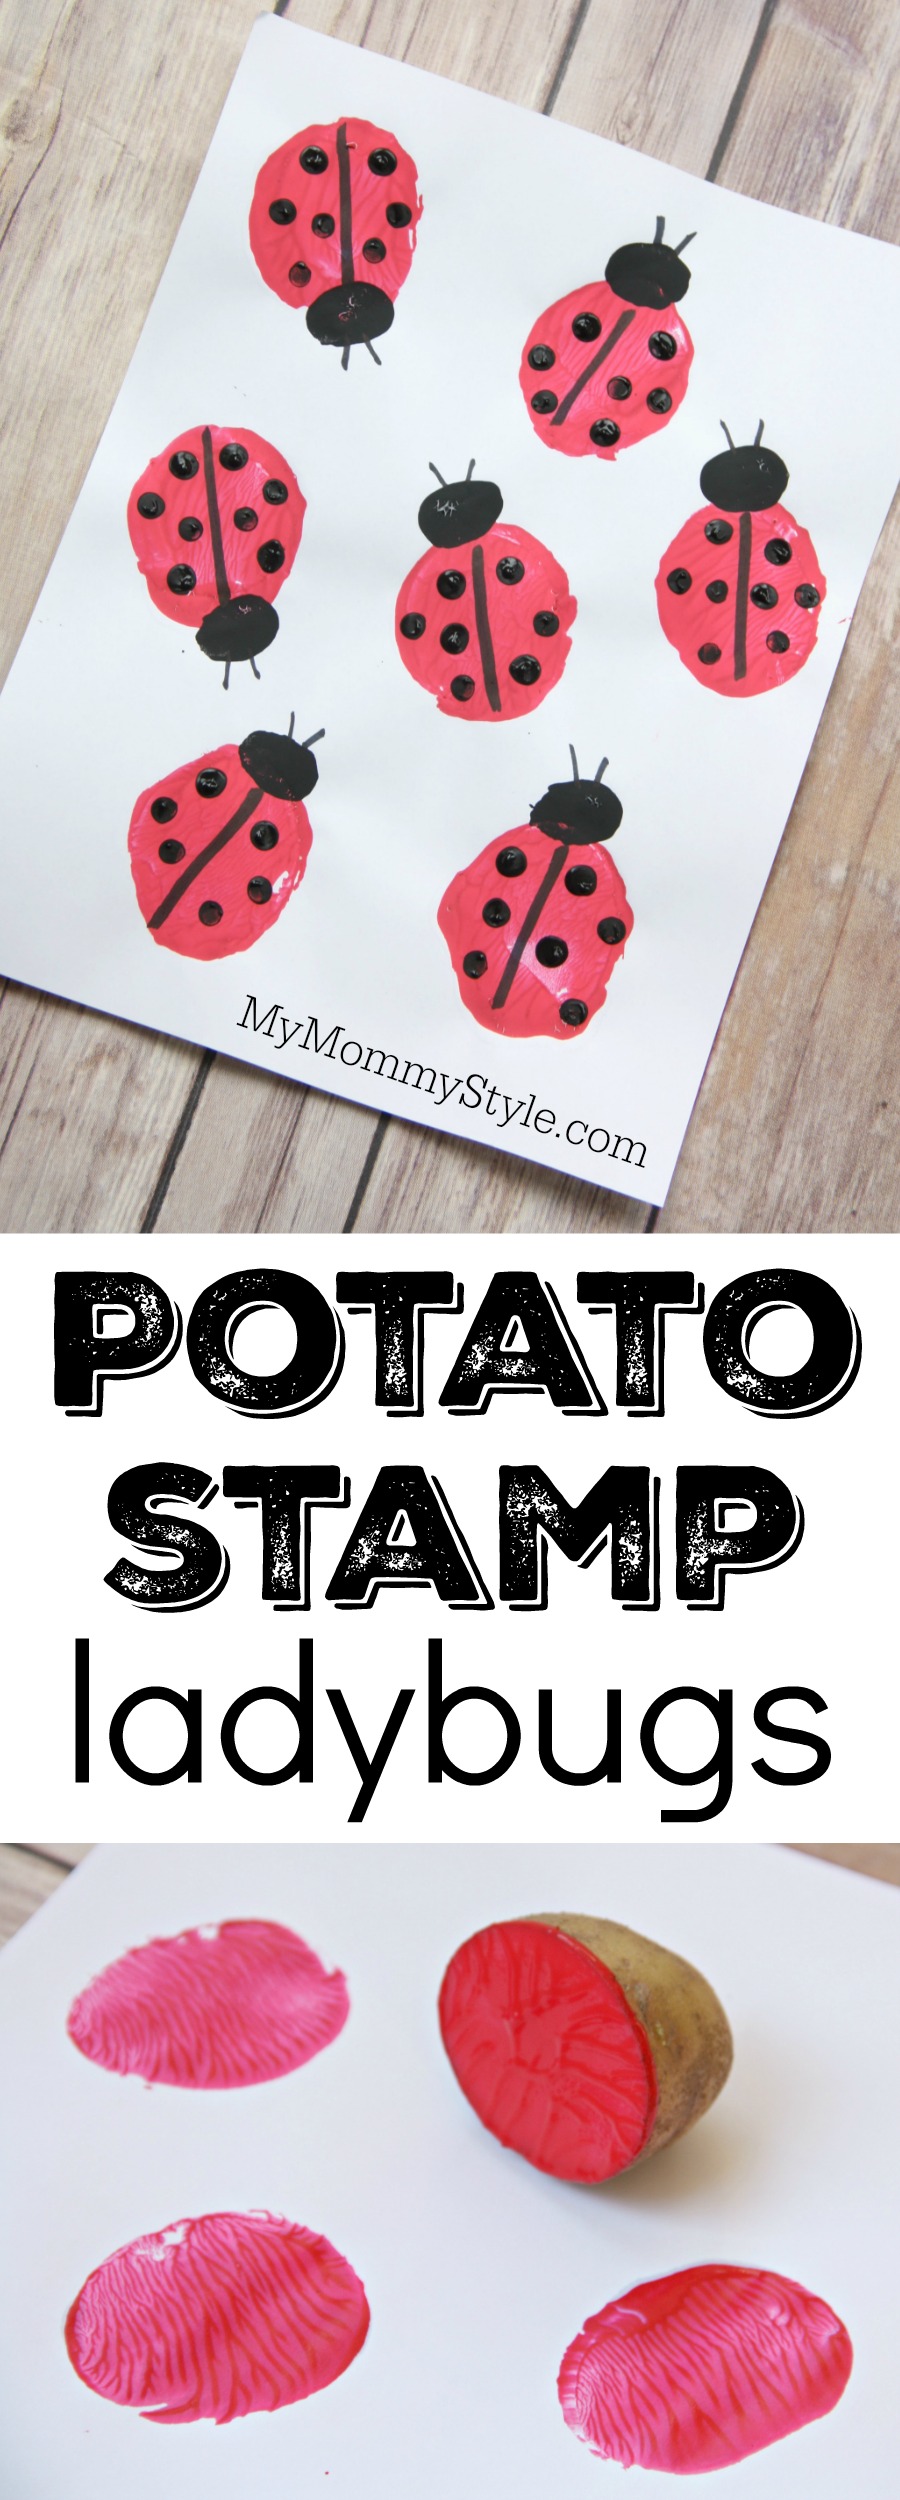 Ladybug Craft of Potato stamp ladybugs on white paper